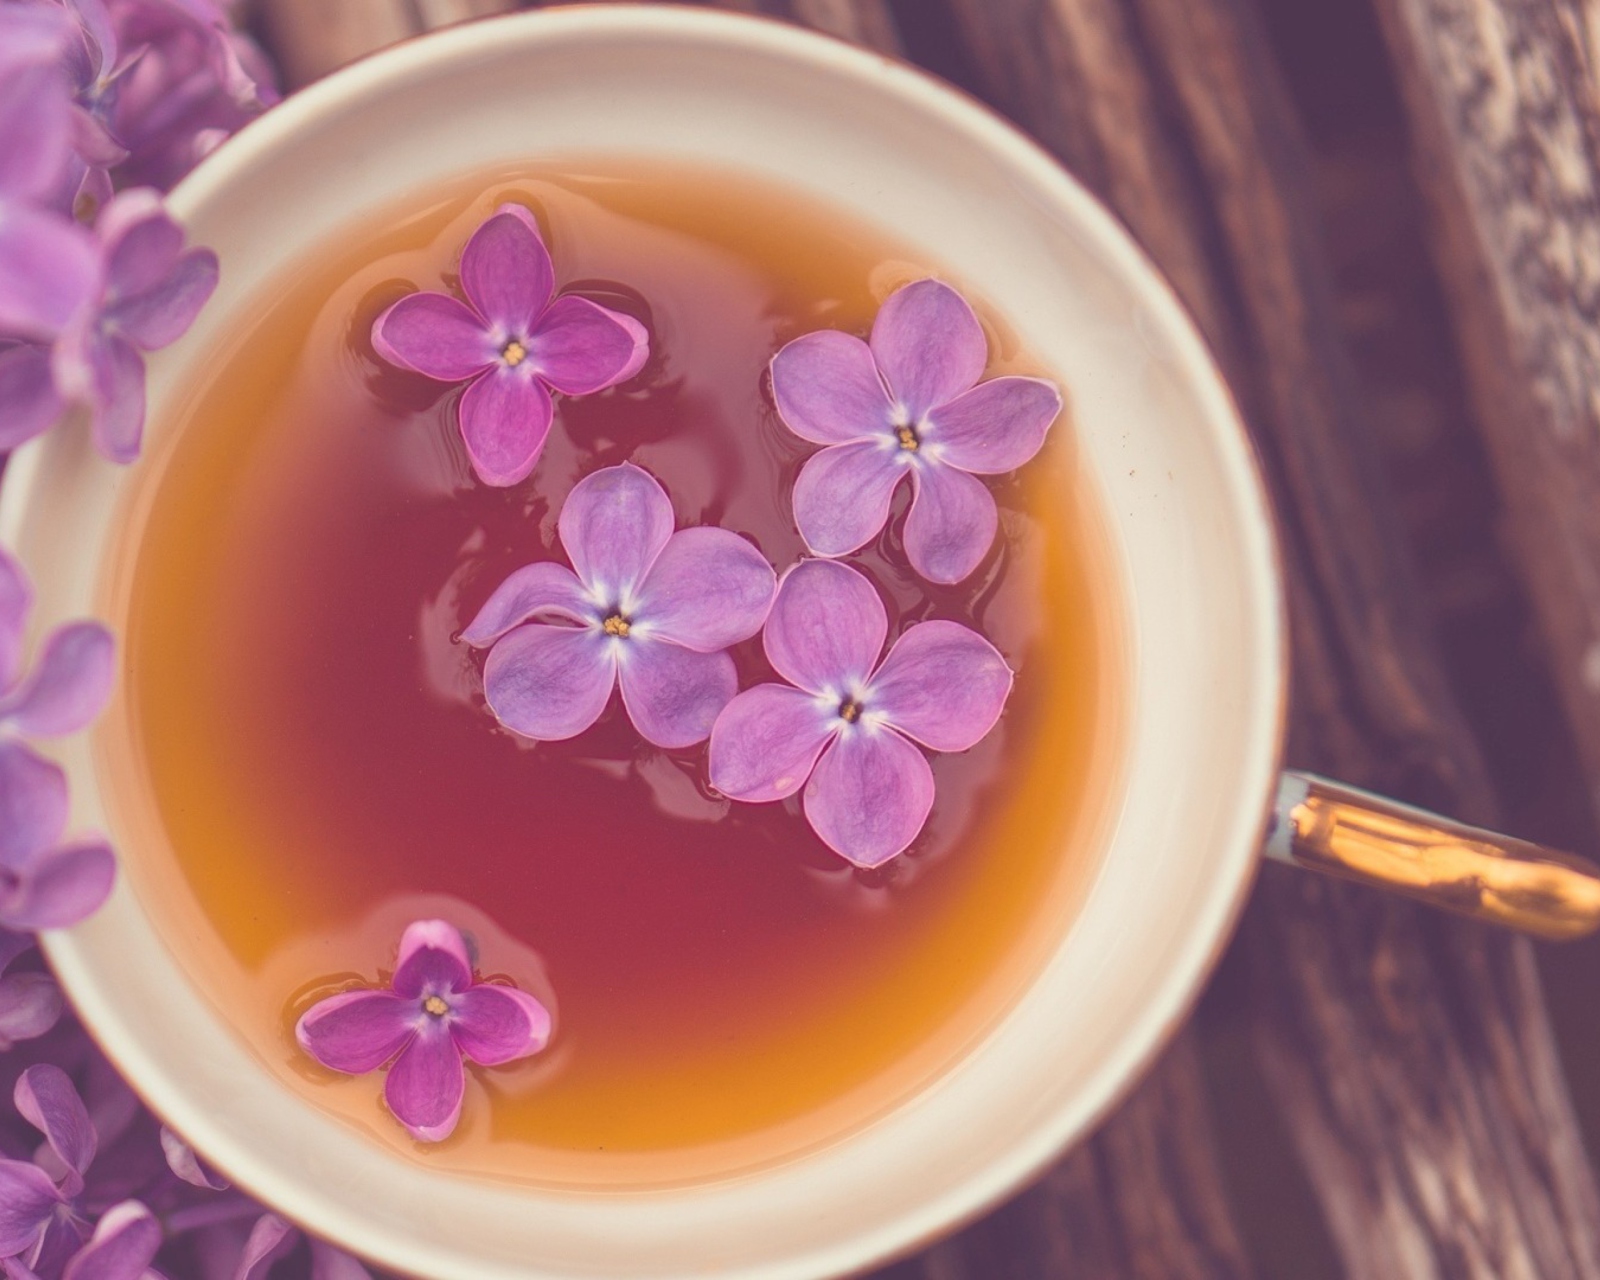 Обои Cup Of Tea And Lilac Flowers 1600x1280